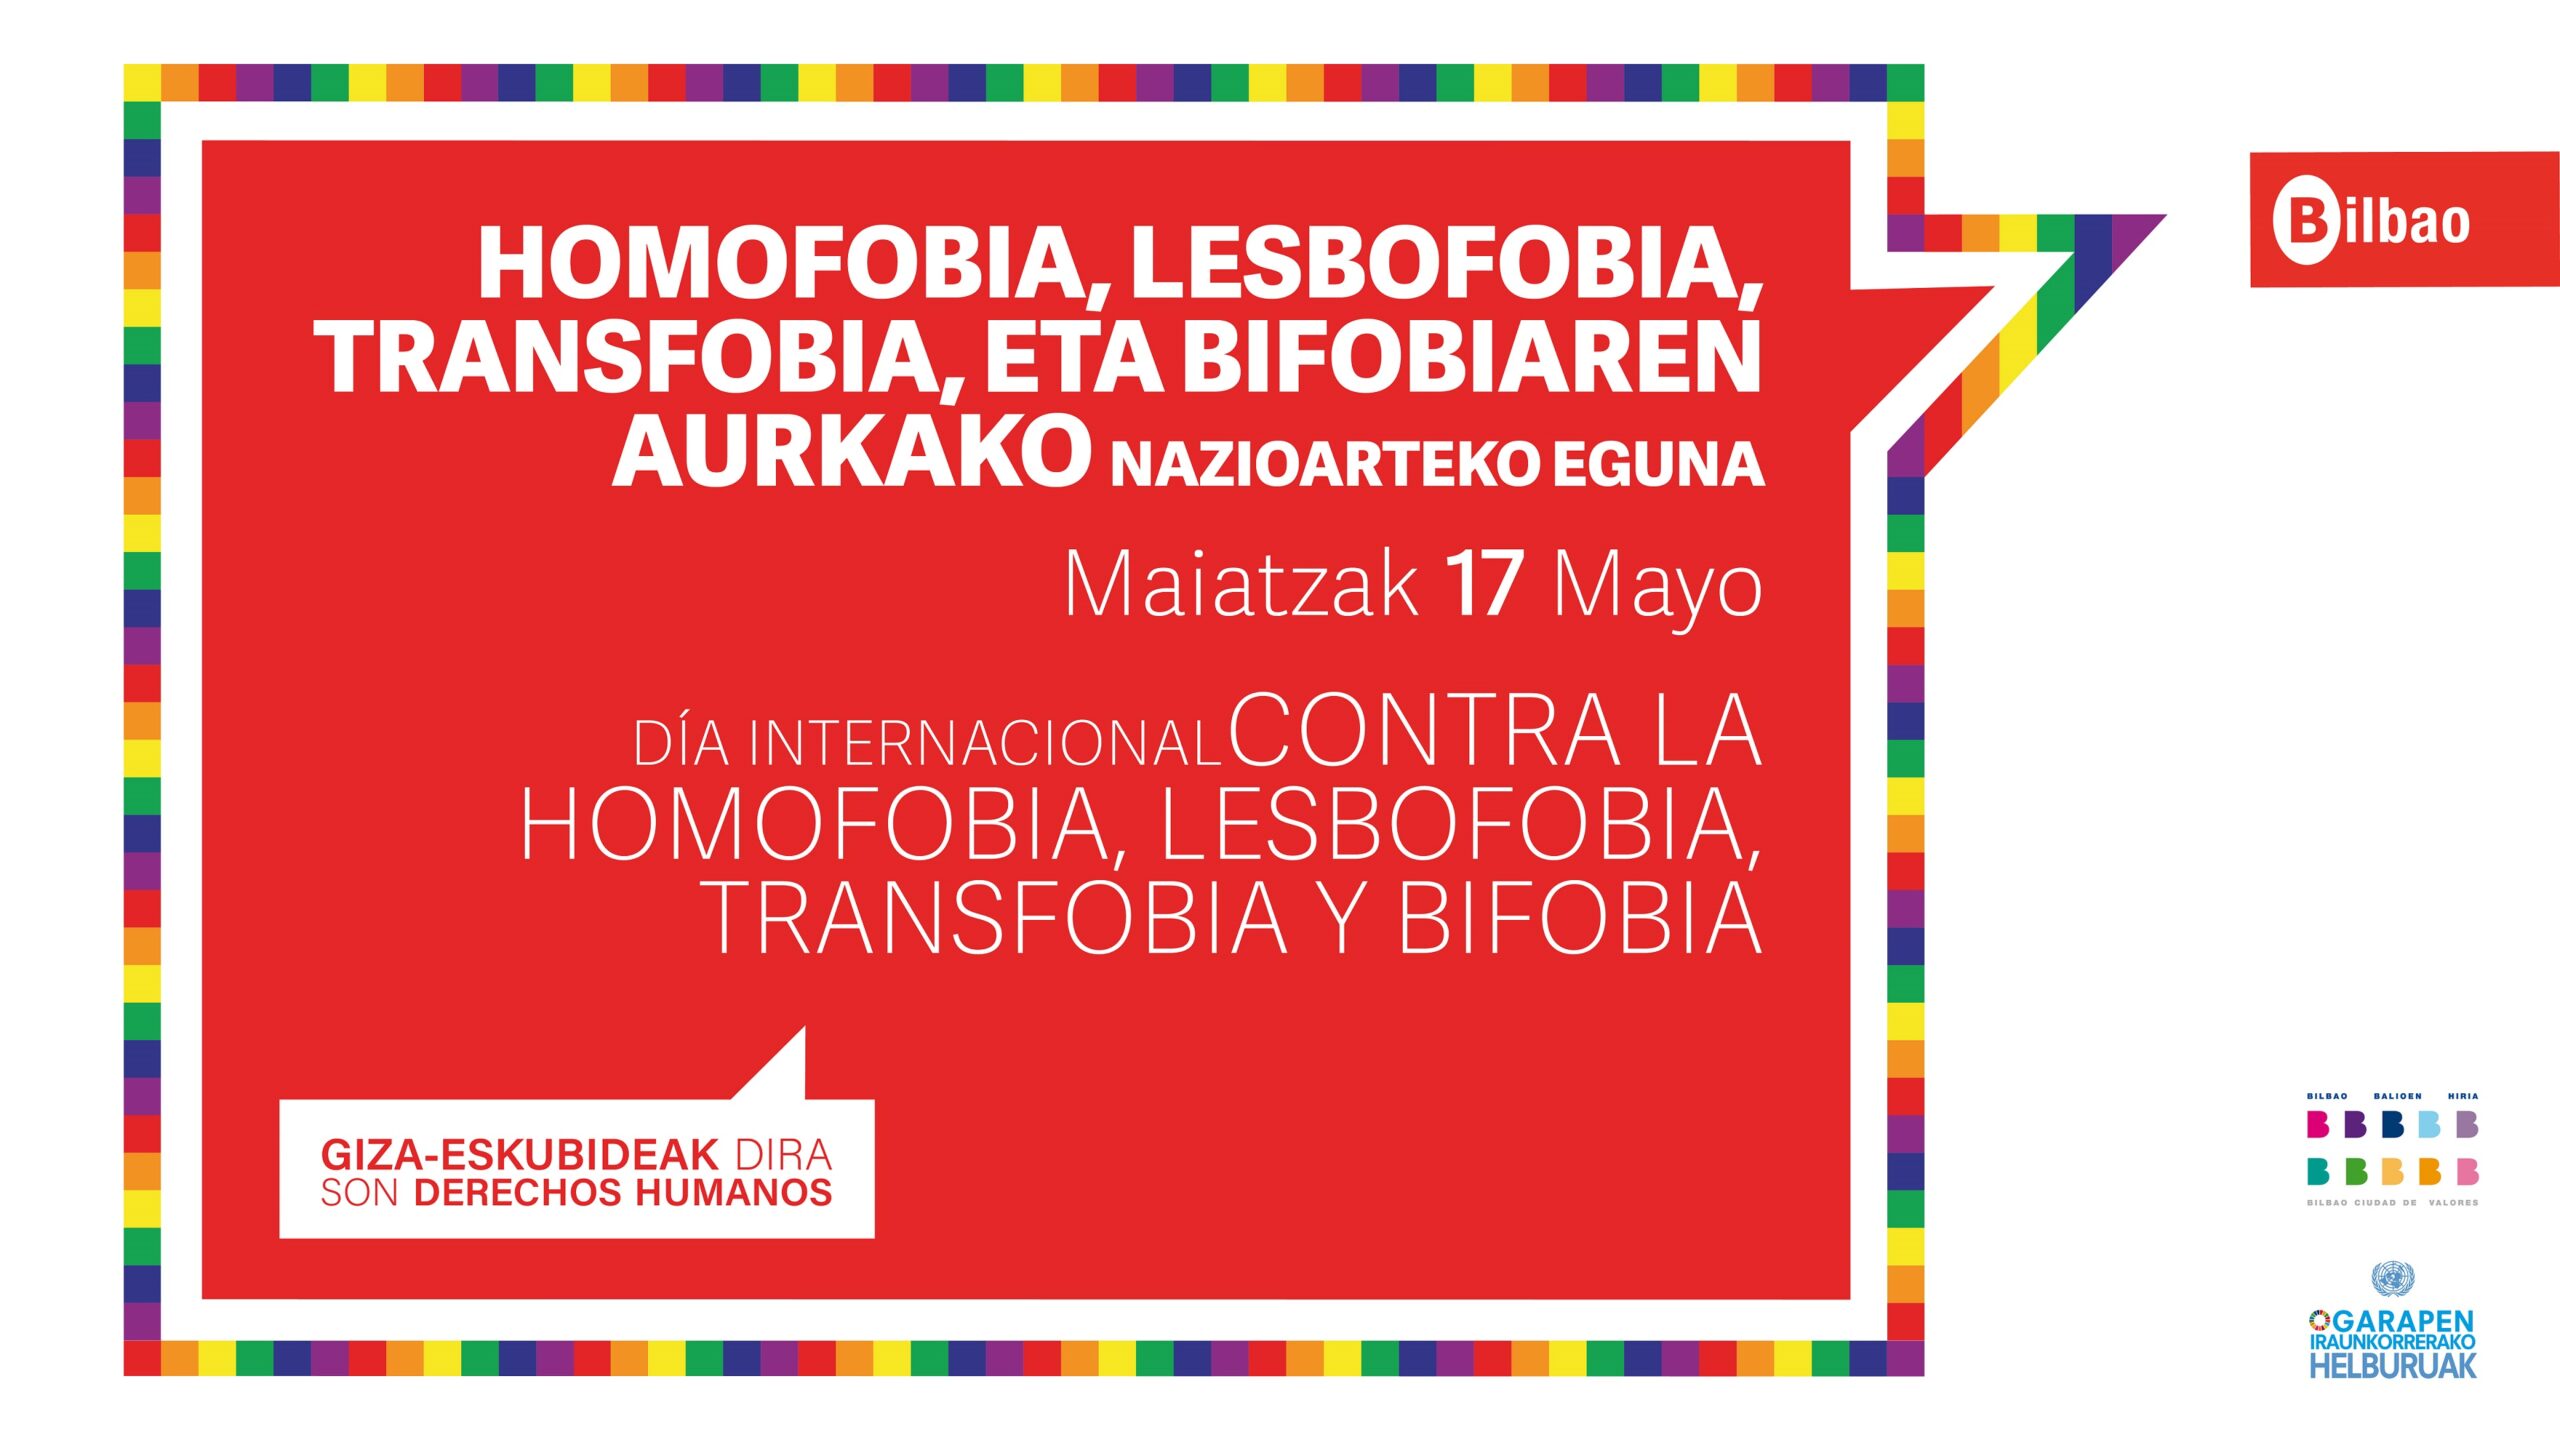 Bilbao rechaza la discriminación contra el colectivo LGTBIQ+